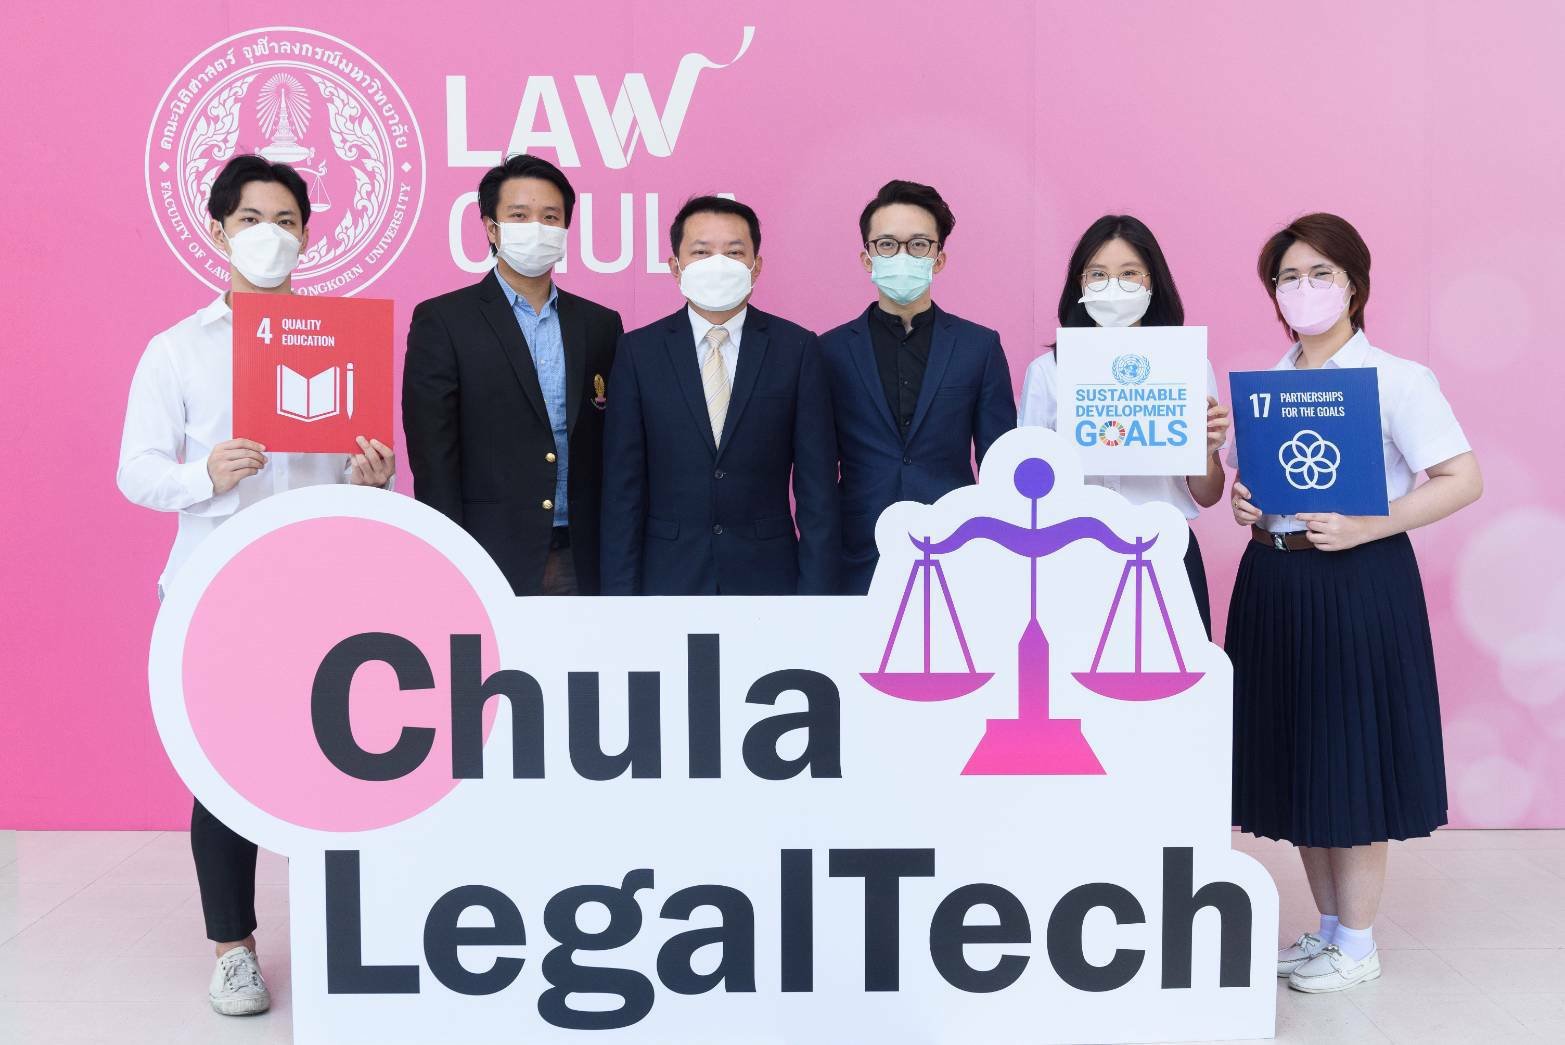 มูลนิธิกรุงศรี หนุนโครงการ Chula LegalTech ชูคนรุ่นใหม่สร้างนวัตกรรมกฎหมาย แก้ปัญหาสังคมและธุรกิจ